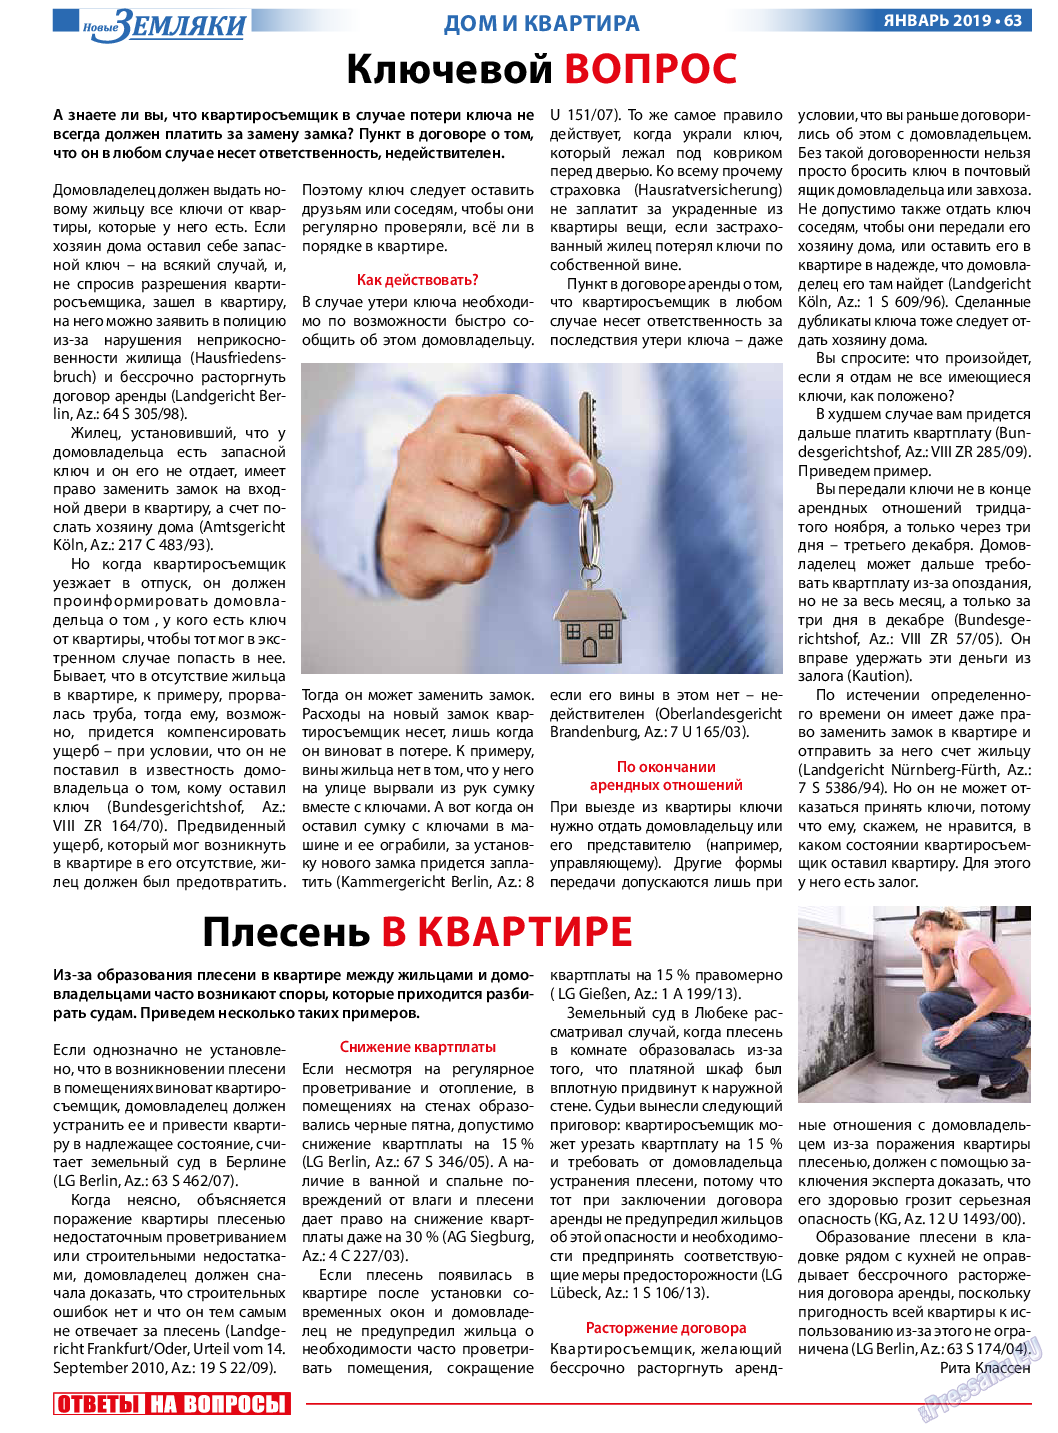 Новые Земляки, газета. 2019 №1 стр.63